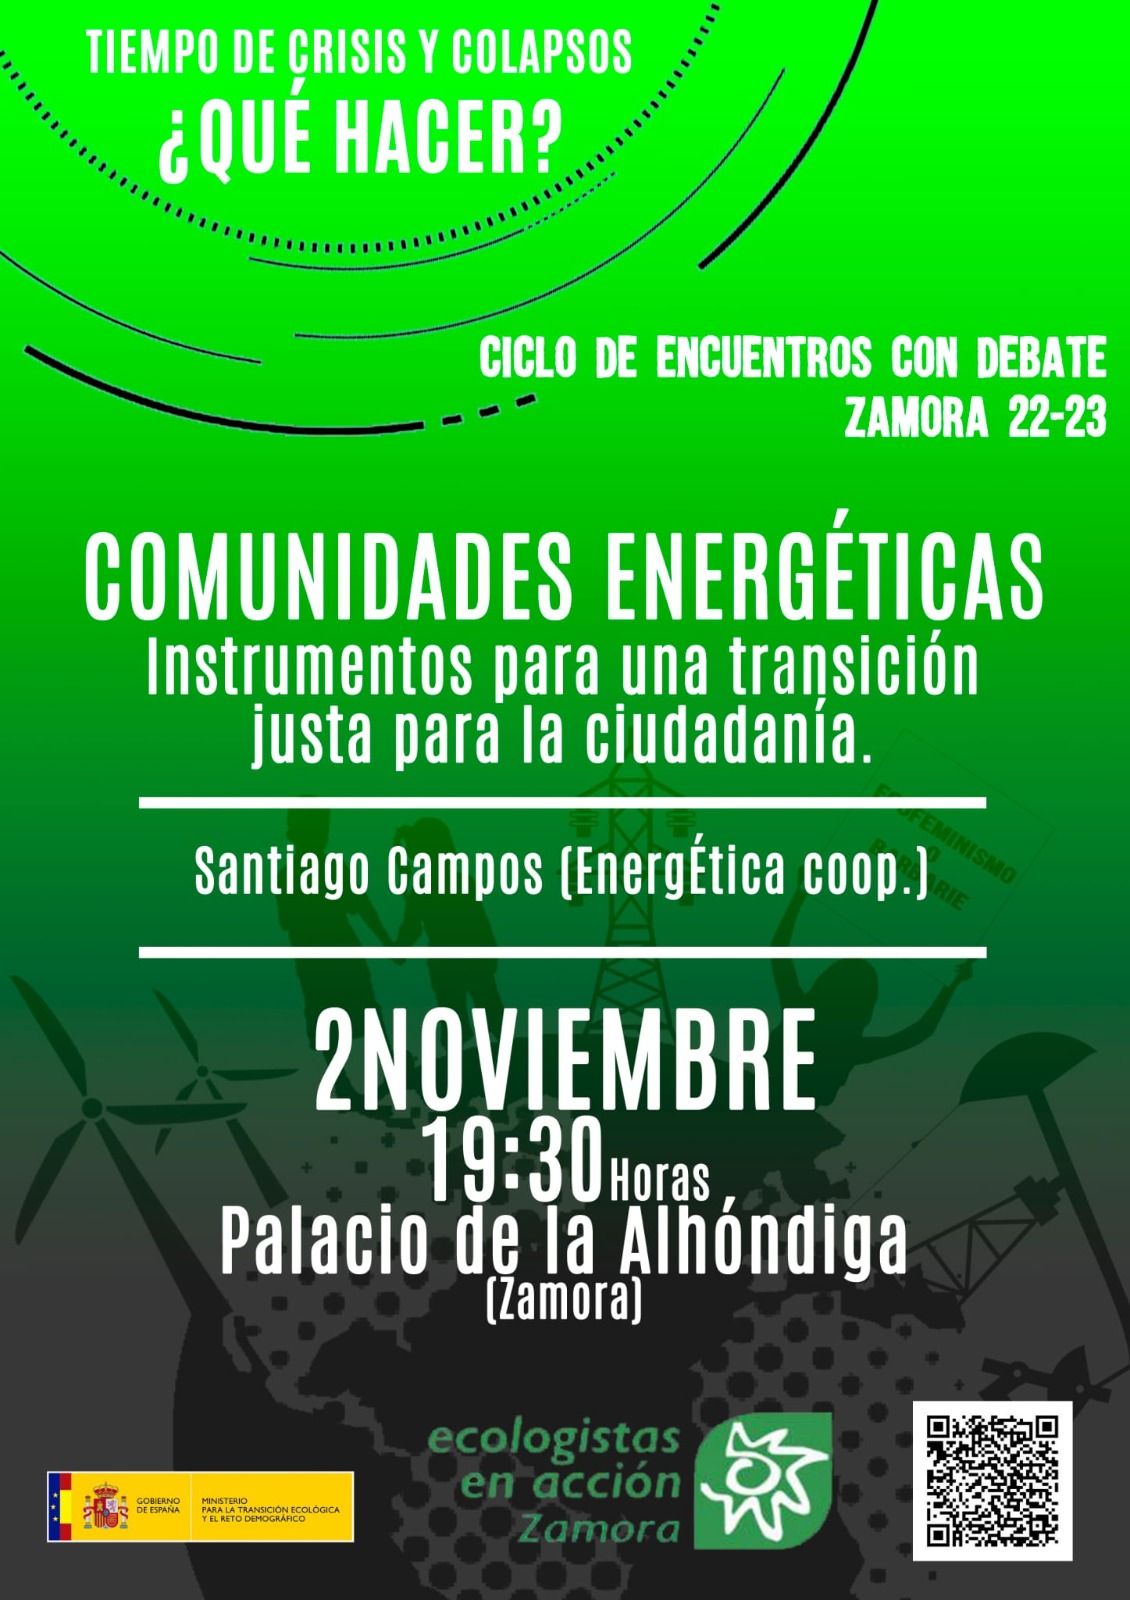 Ciclo de encuentros con debate de Ecologistas en Acción Zamora